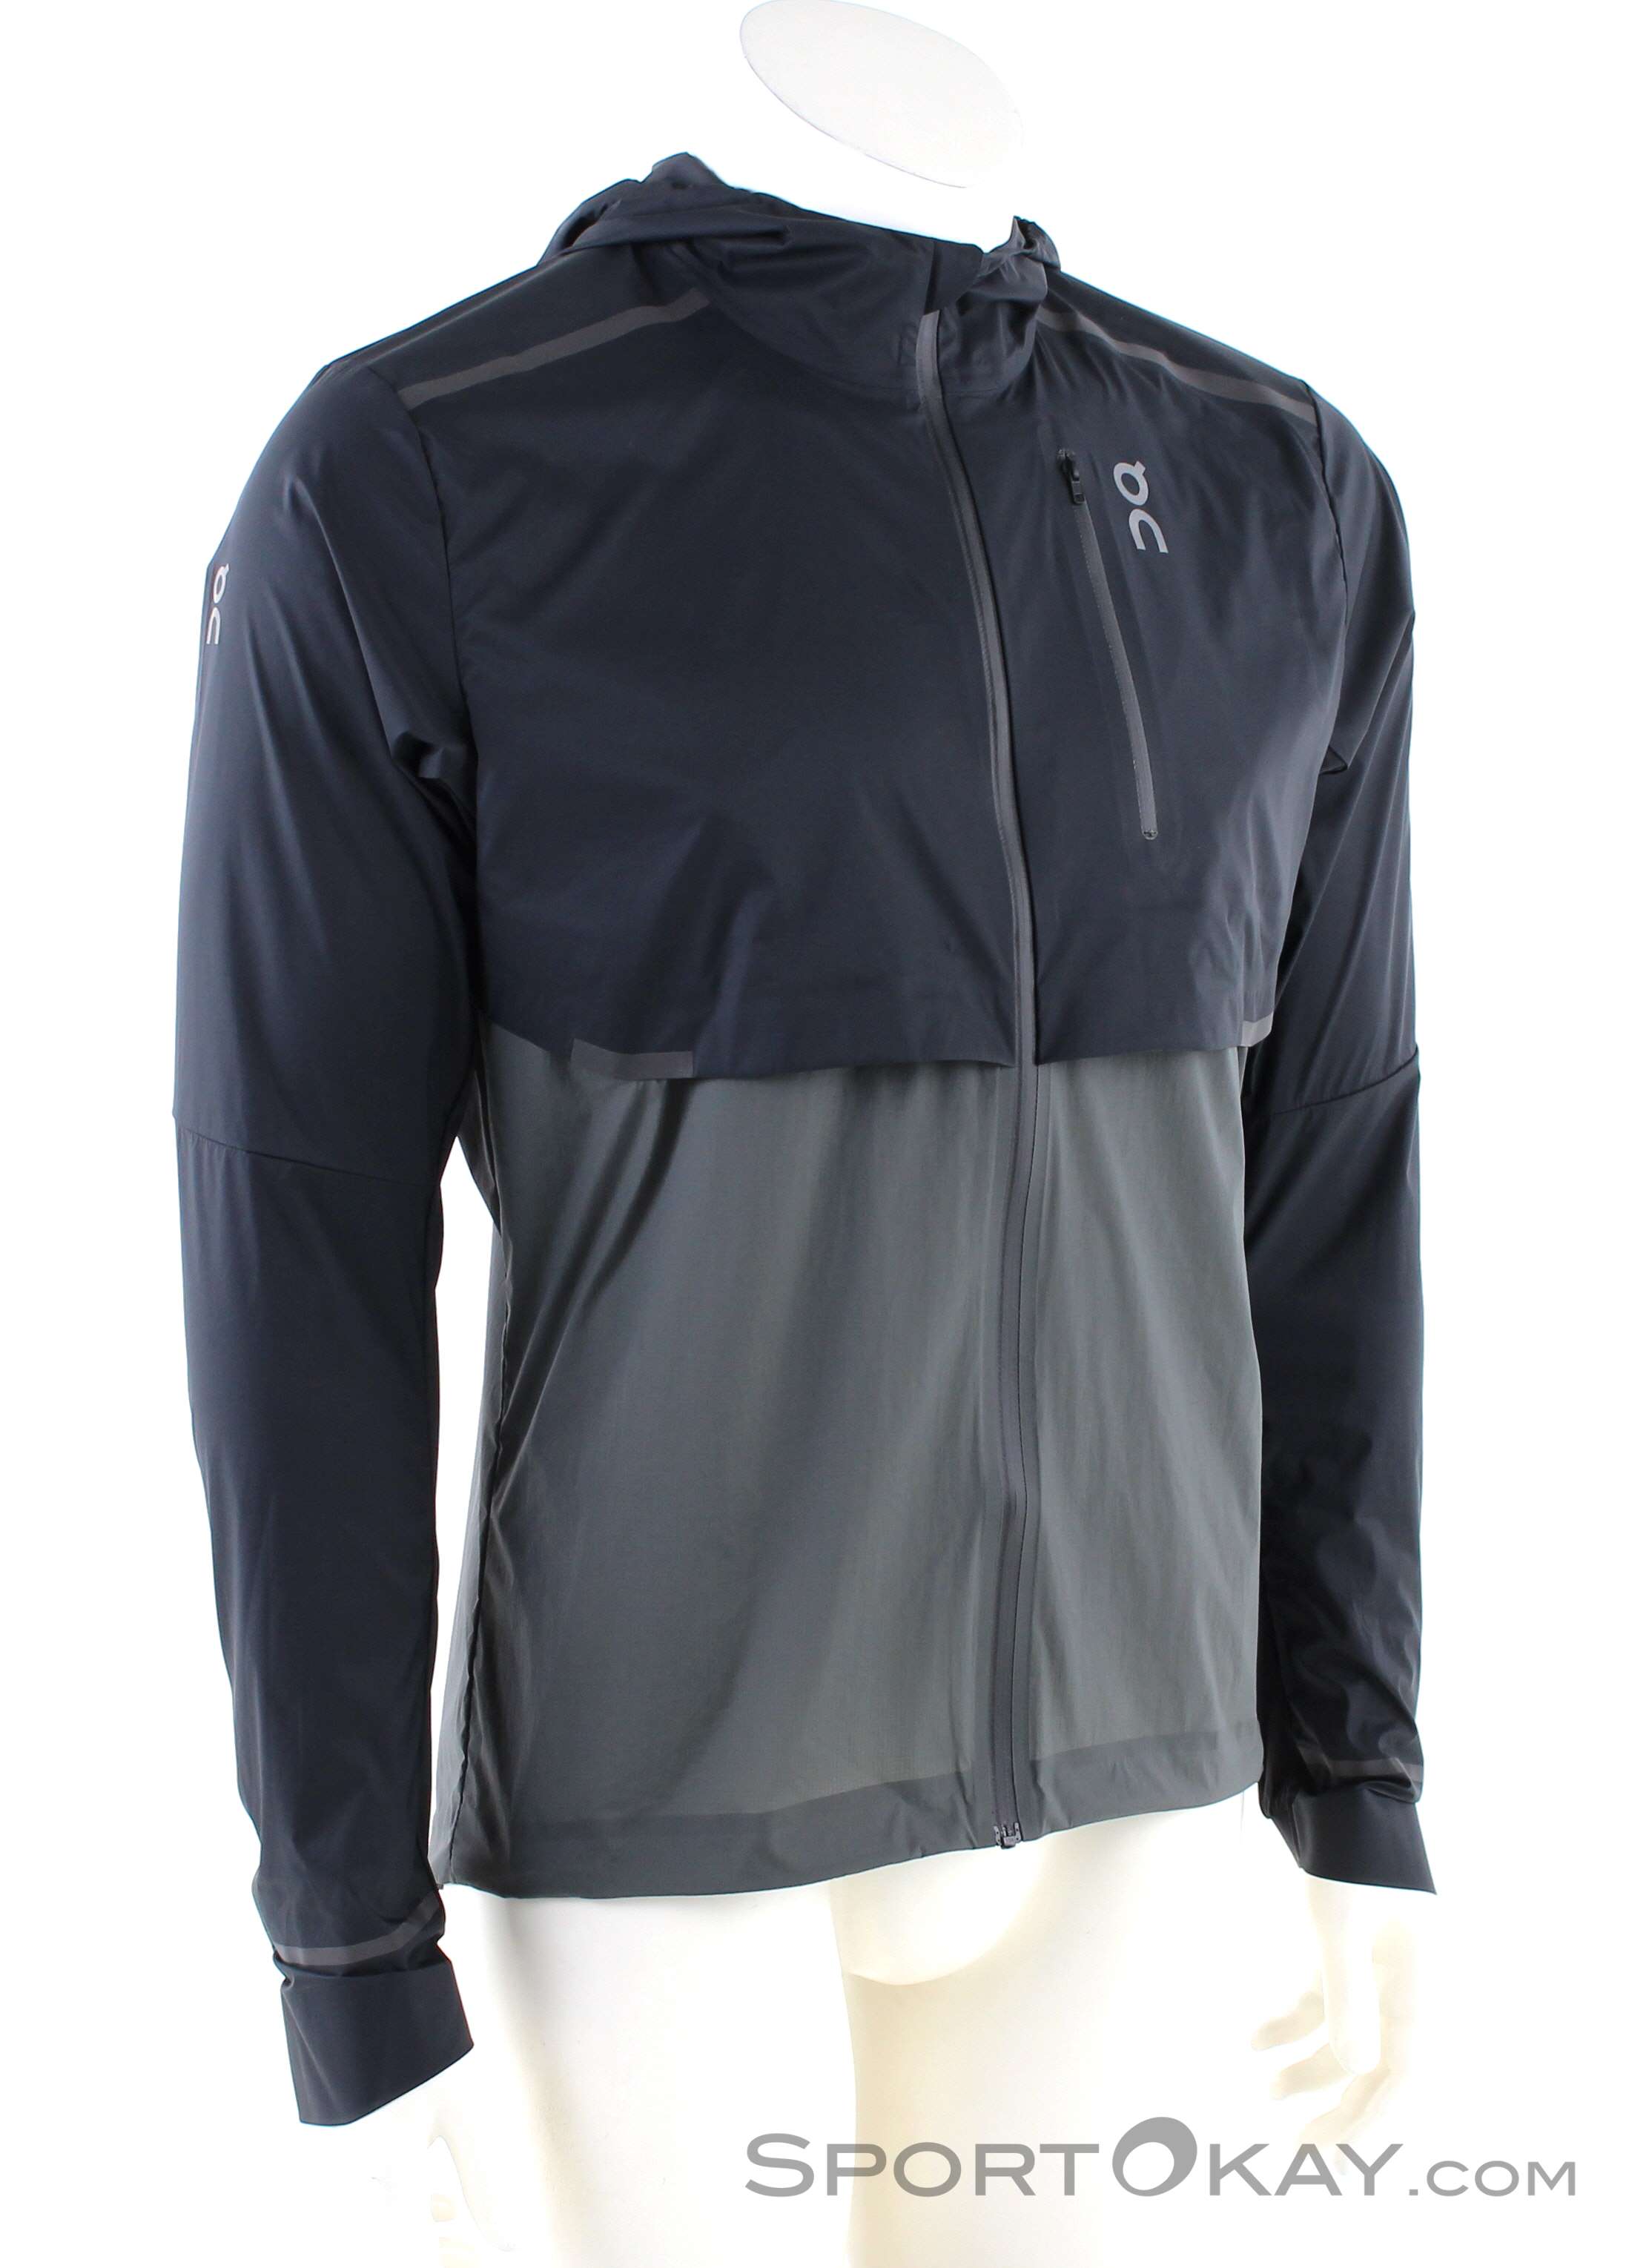 On Weather Jacket Mens Running Jacket - Jackets - Running Clothing